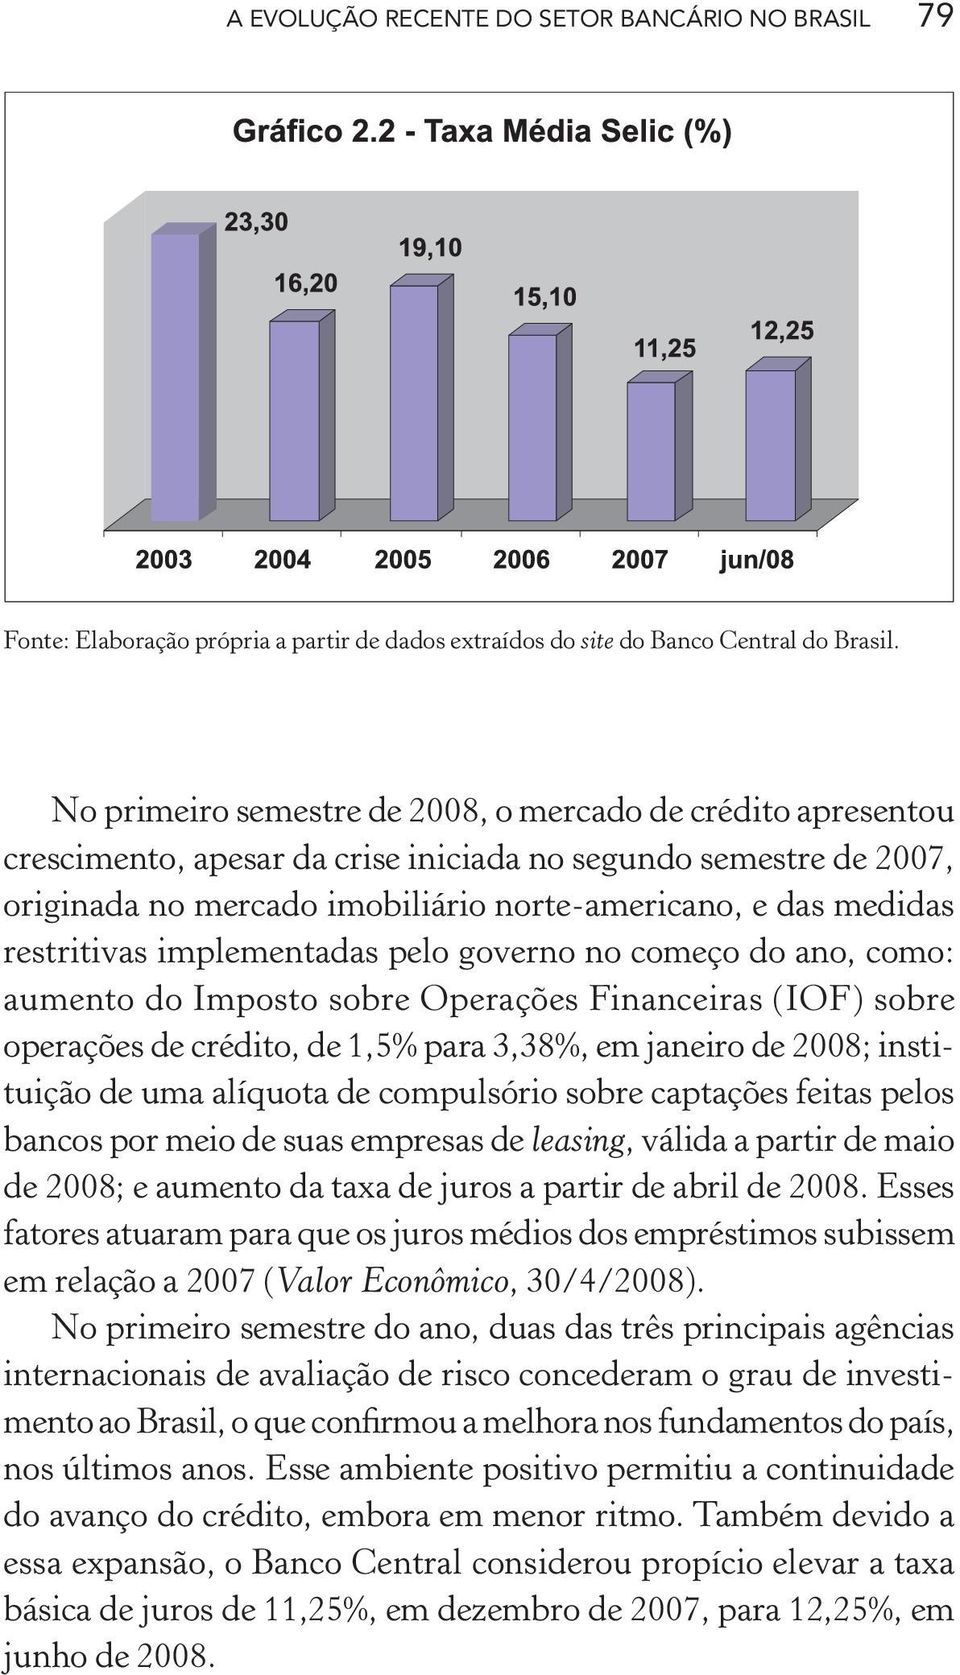 restritivas implementadas pelo governo no começo do ano, como: aumento do Imposto sobre Operações Financeiras (IOF) sobre operações de crédito, de 1,5% para 3,38%, em janeiro de 2008; instituição de